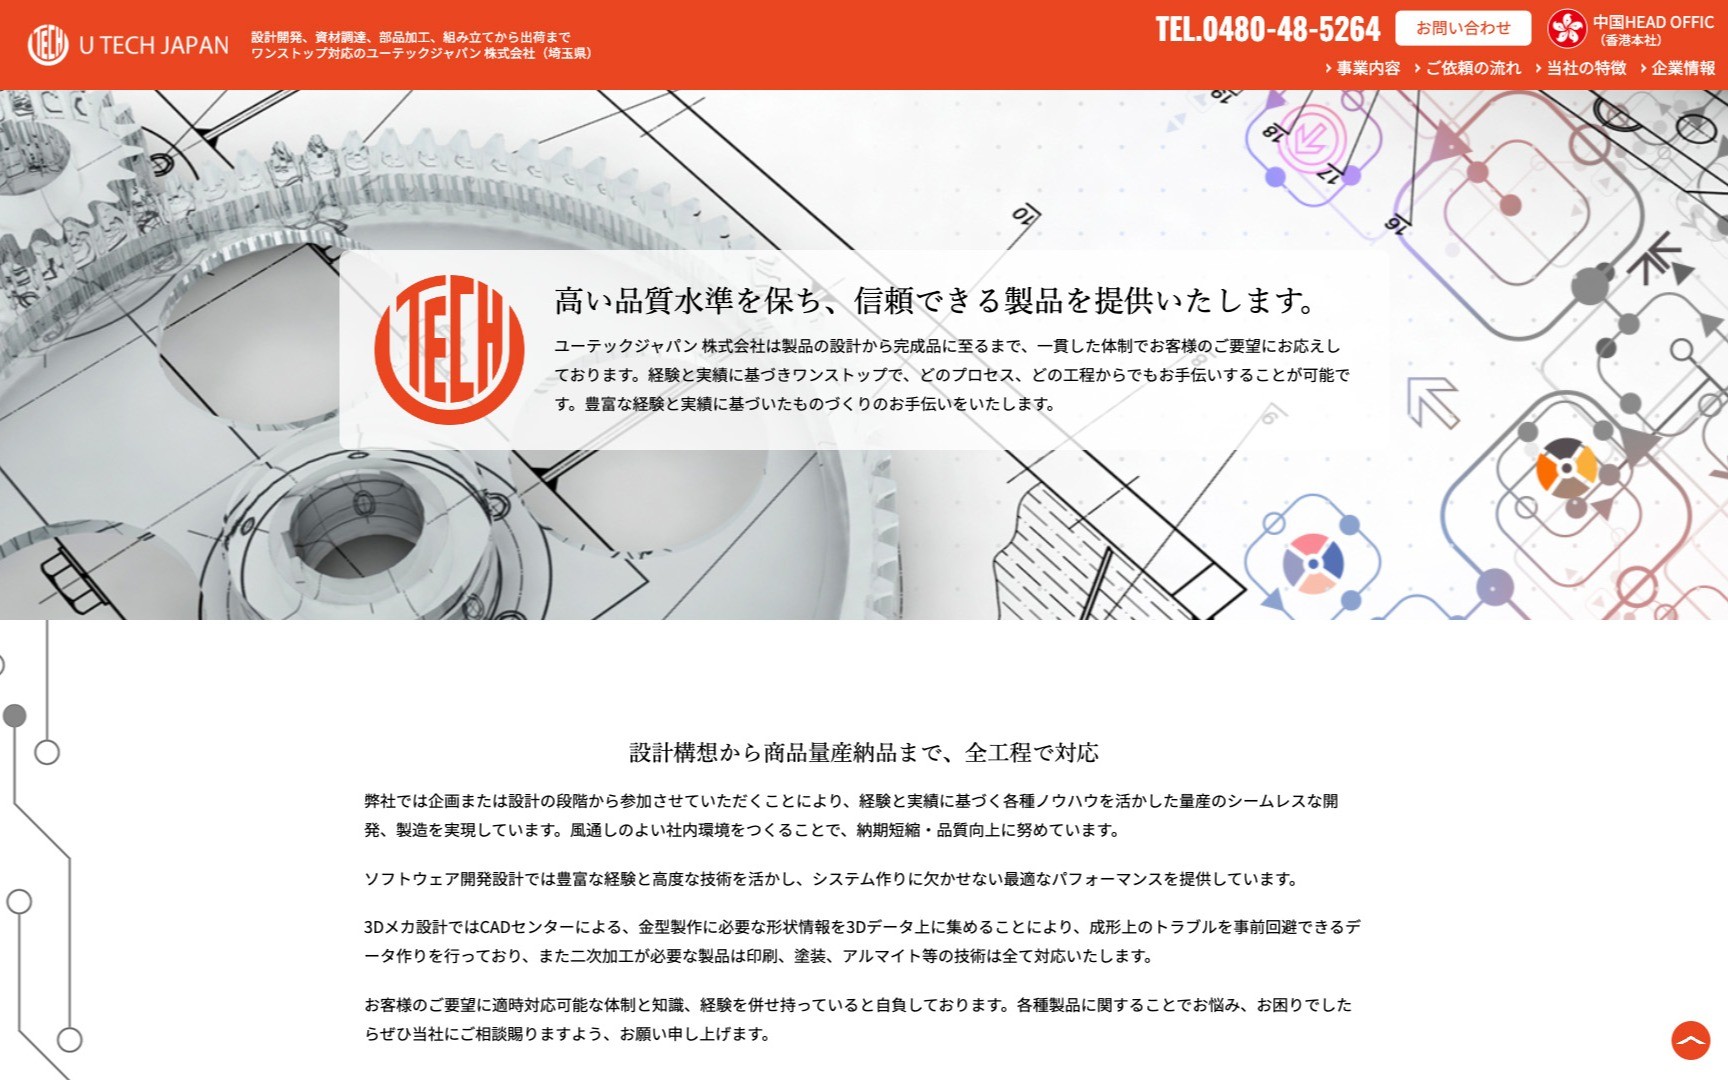 ユーテックジャパン 株式会社 様 | Web制作・ホームページ制作実績 | Web幹事